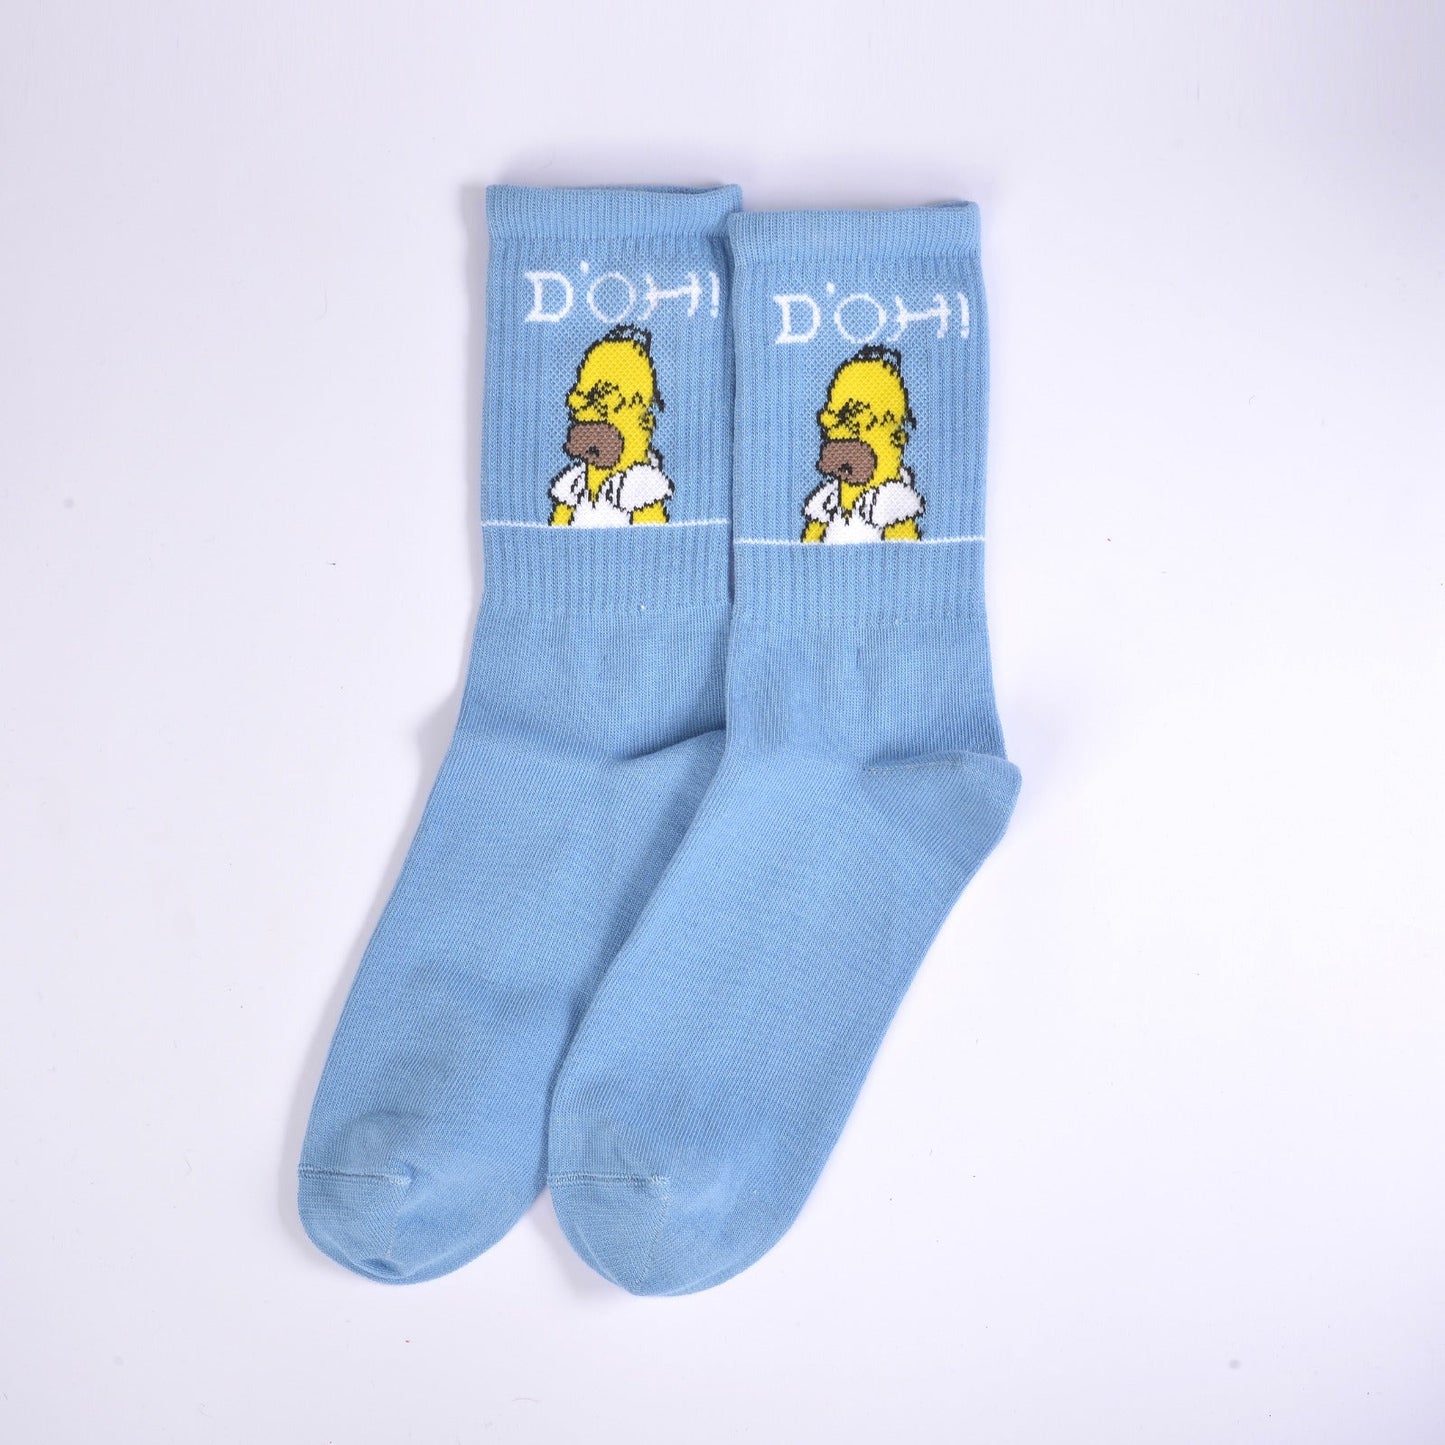 Simpsons Kids Socks 1 pair